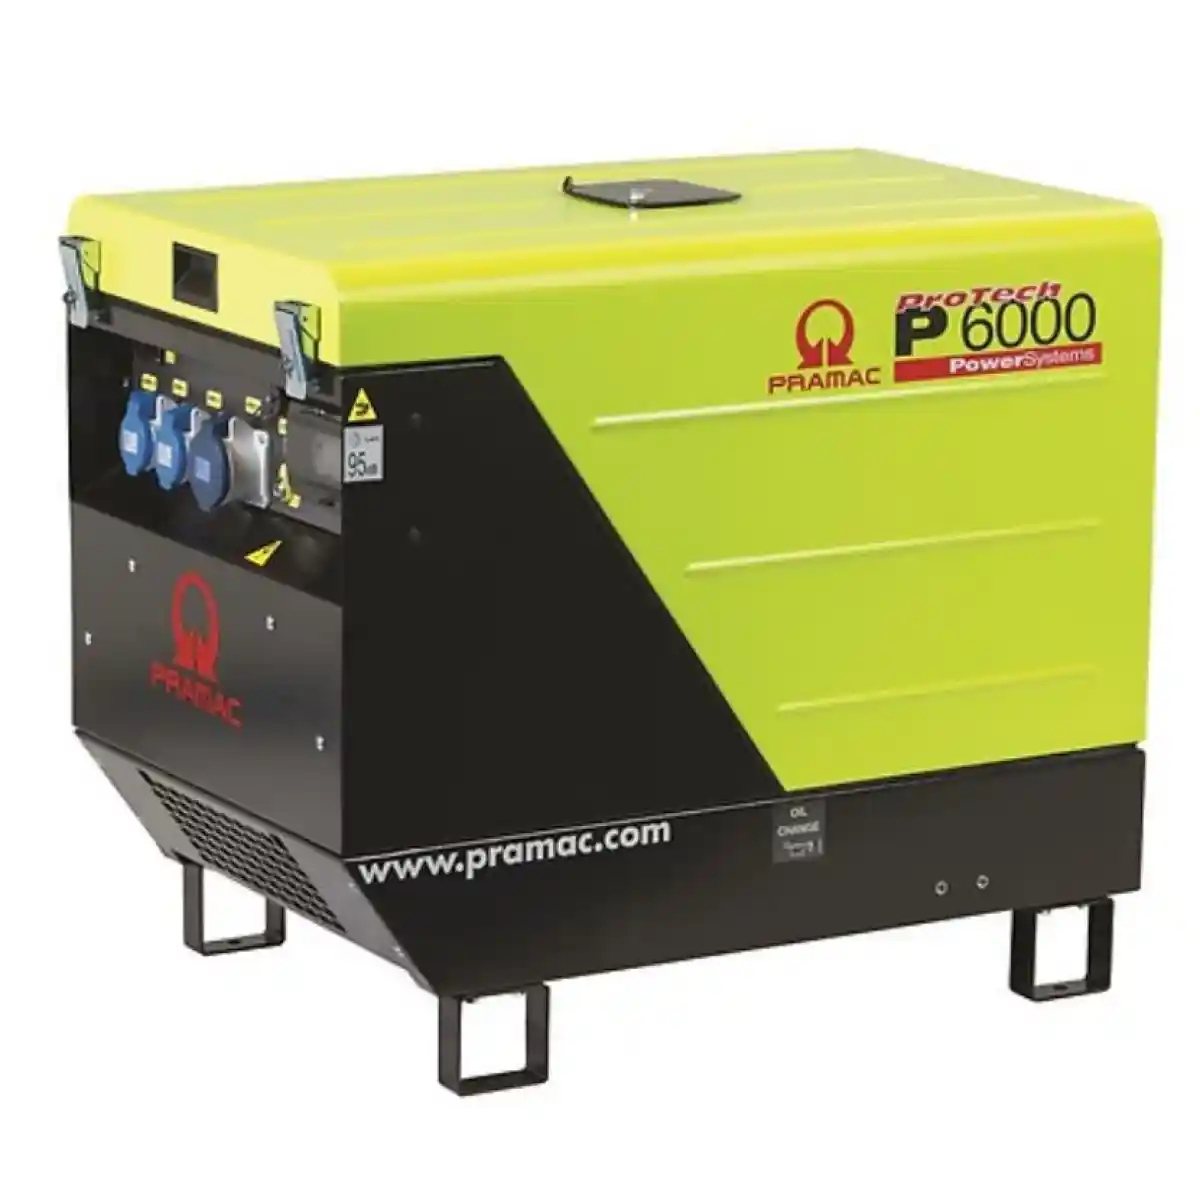 Pramac P6000 5.3kW Diesel Generator Electric Start 230V